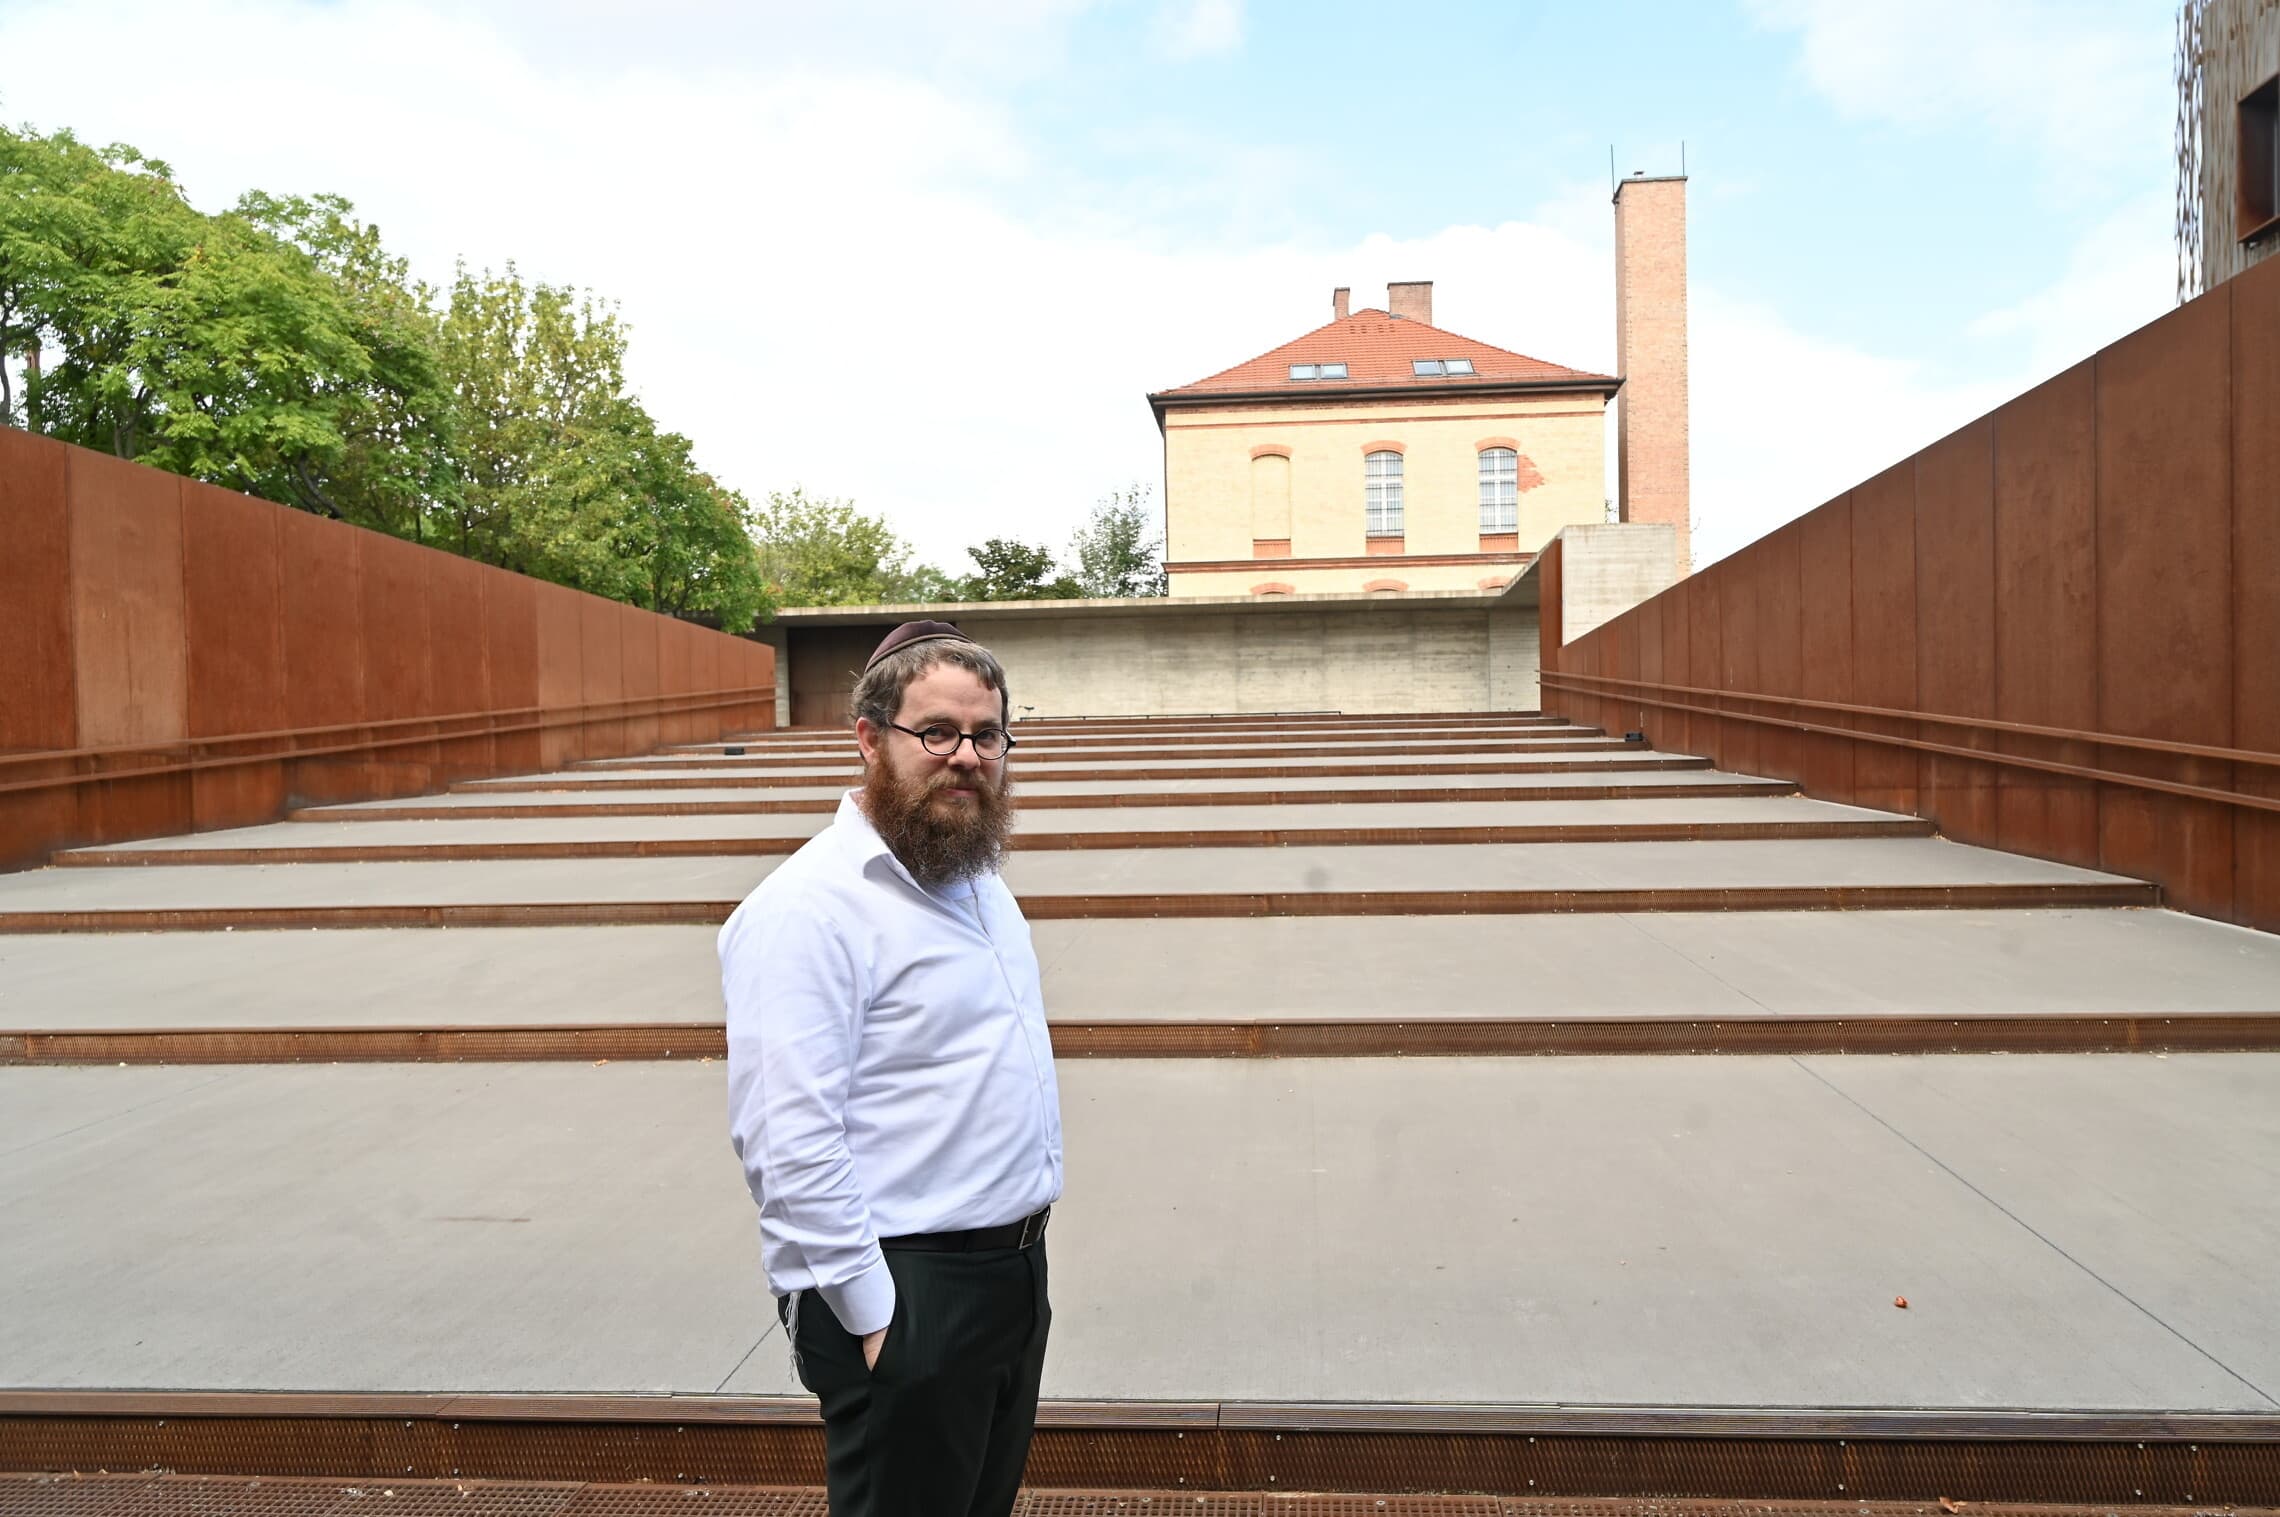 הרב שלמה קובס עומד בחזית המסדרון התלוי של &#039;בית הגורל&#039; בבודפשט, שנבנה בצורת מגן דוד ומשקיף אל תחנת הרכבת לשעבר, משם גורשו יהודים למחנות הריכוז (צילום: כנען ליפשיץ/JTA)